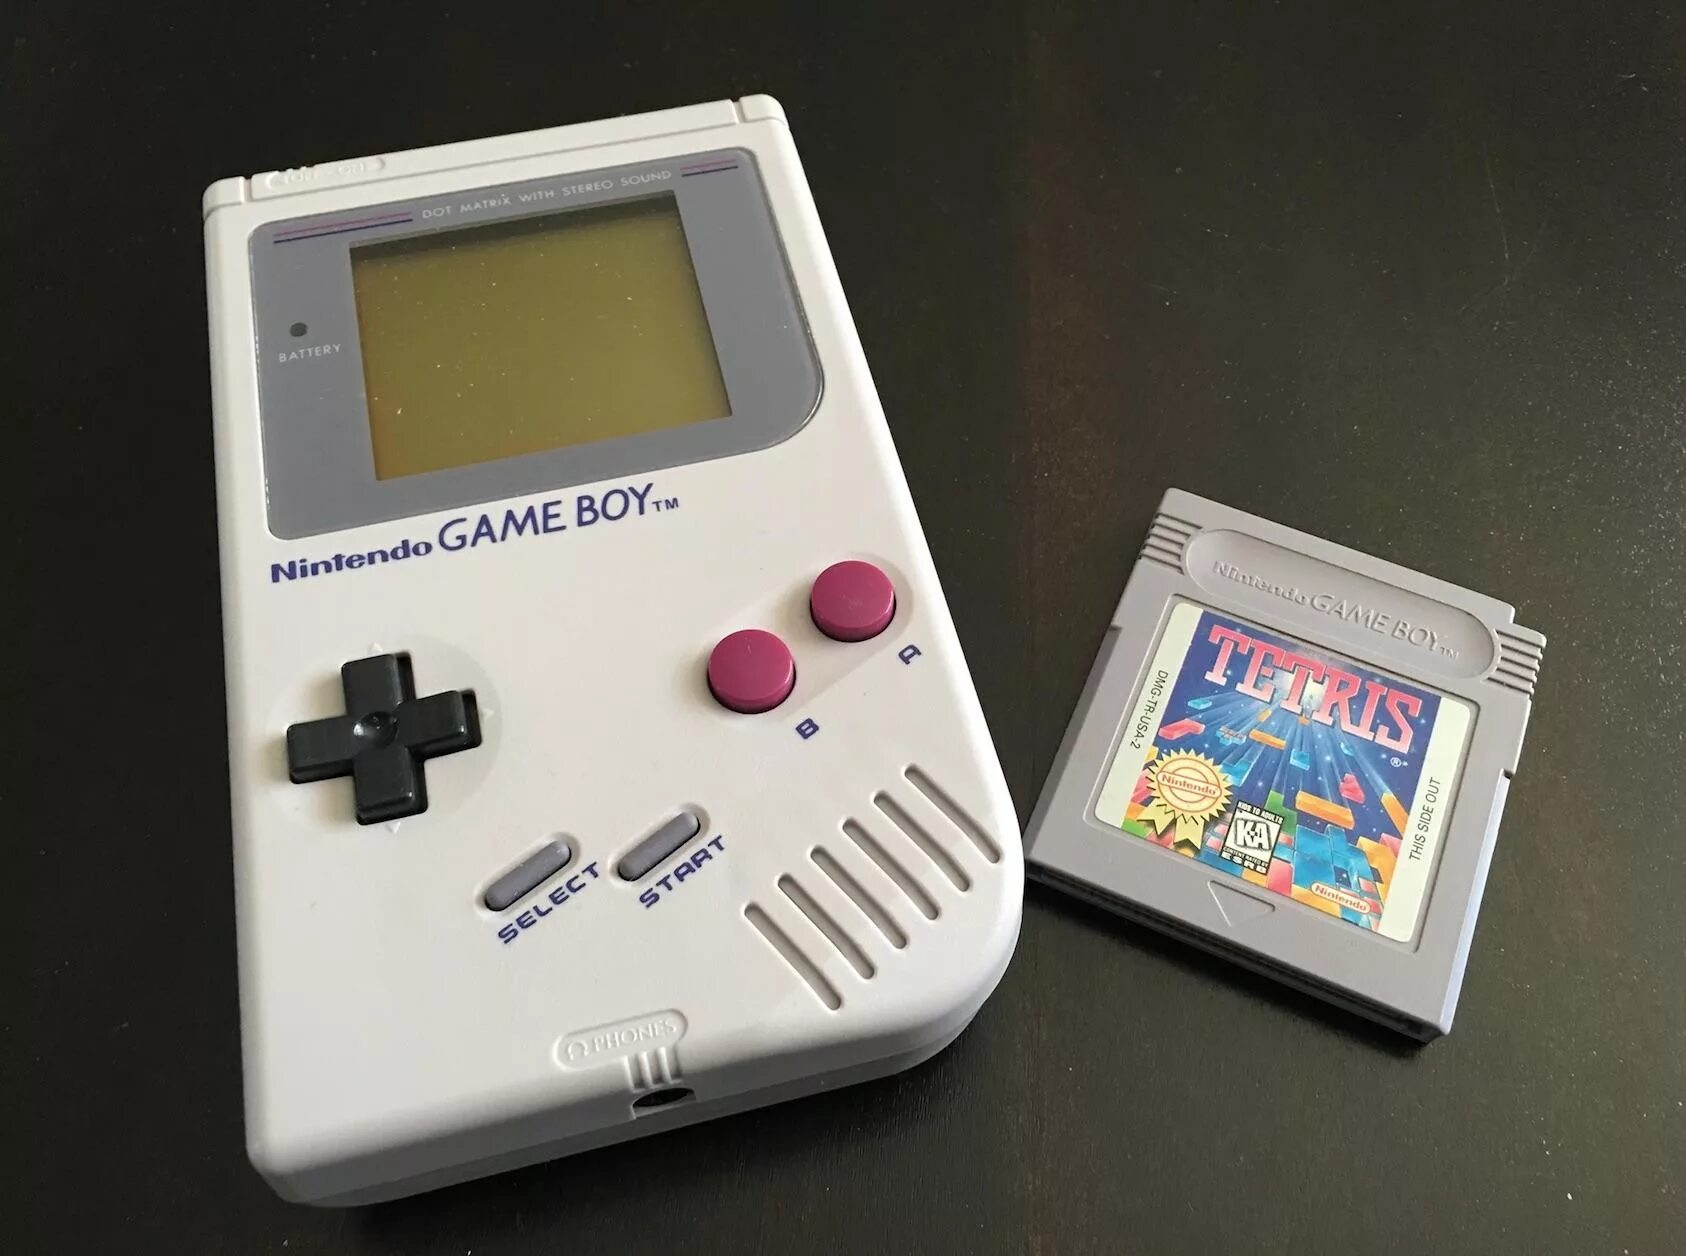 Тетрис Нинтендо 1989. Тетрис геймбой. Тетрис Nintendo 1989 картридж. Тетрис Nintendo game boy.